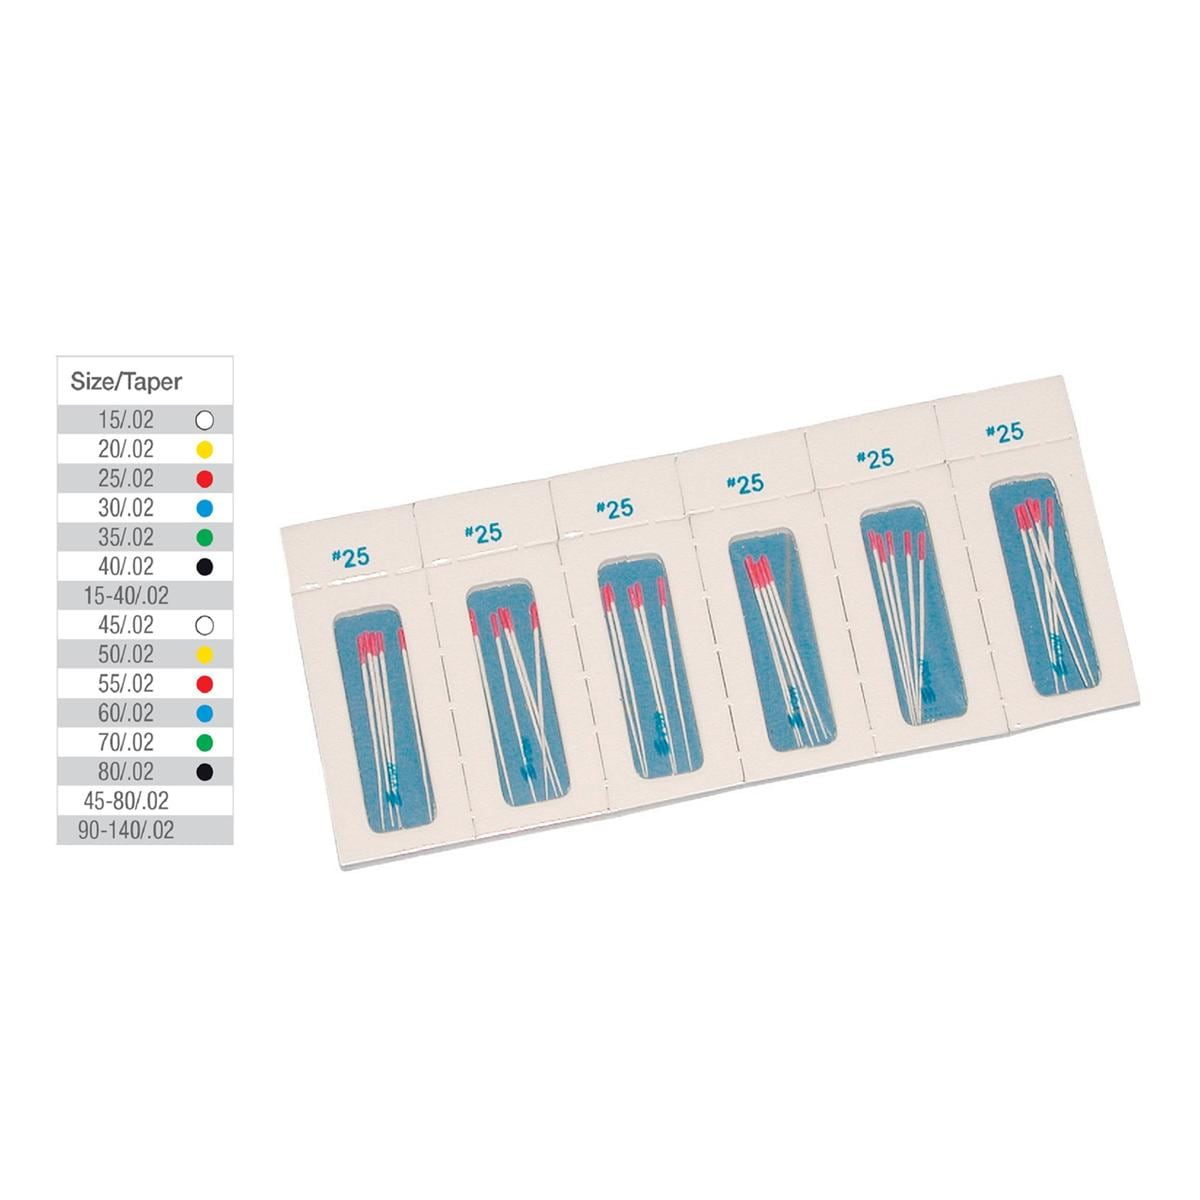 Papierspitzen steril Taper.02 - ISO 060, blau, Packung 180 Stück